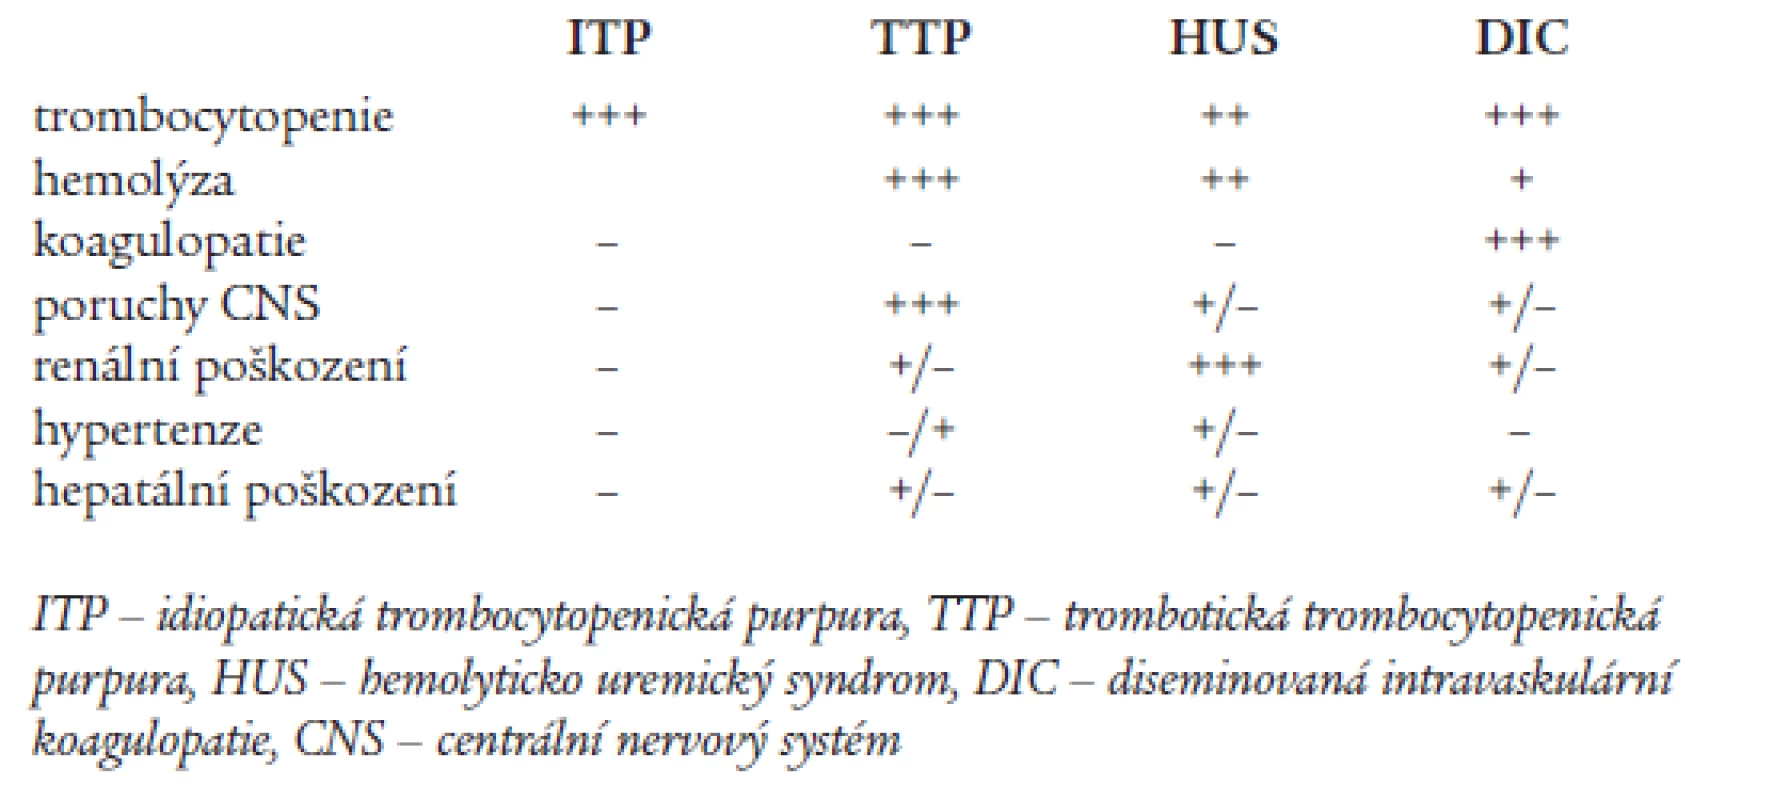 Diferenciální diagnostika vybraných trombocytopenických purpur.